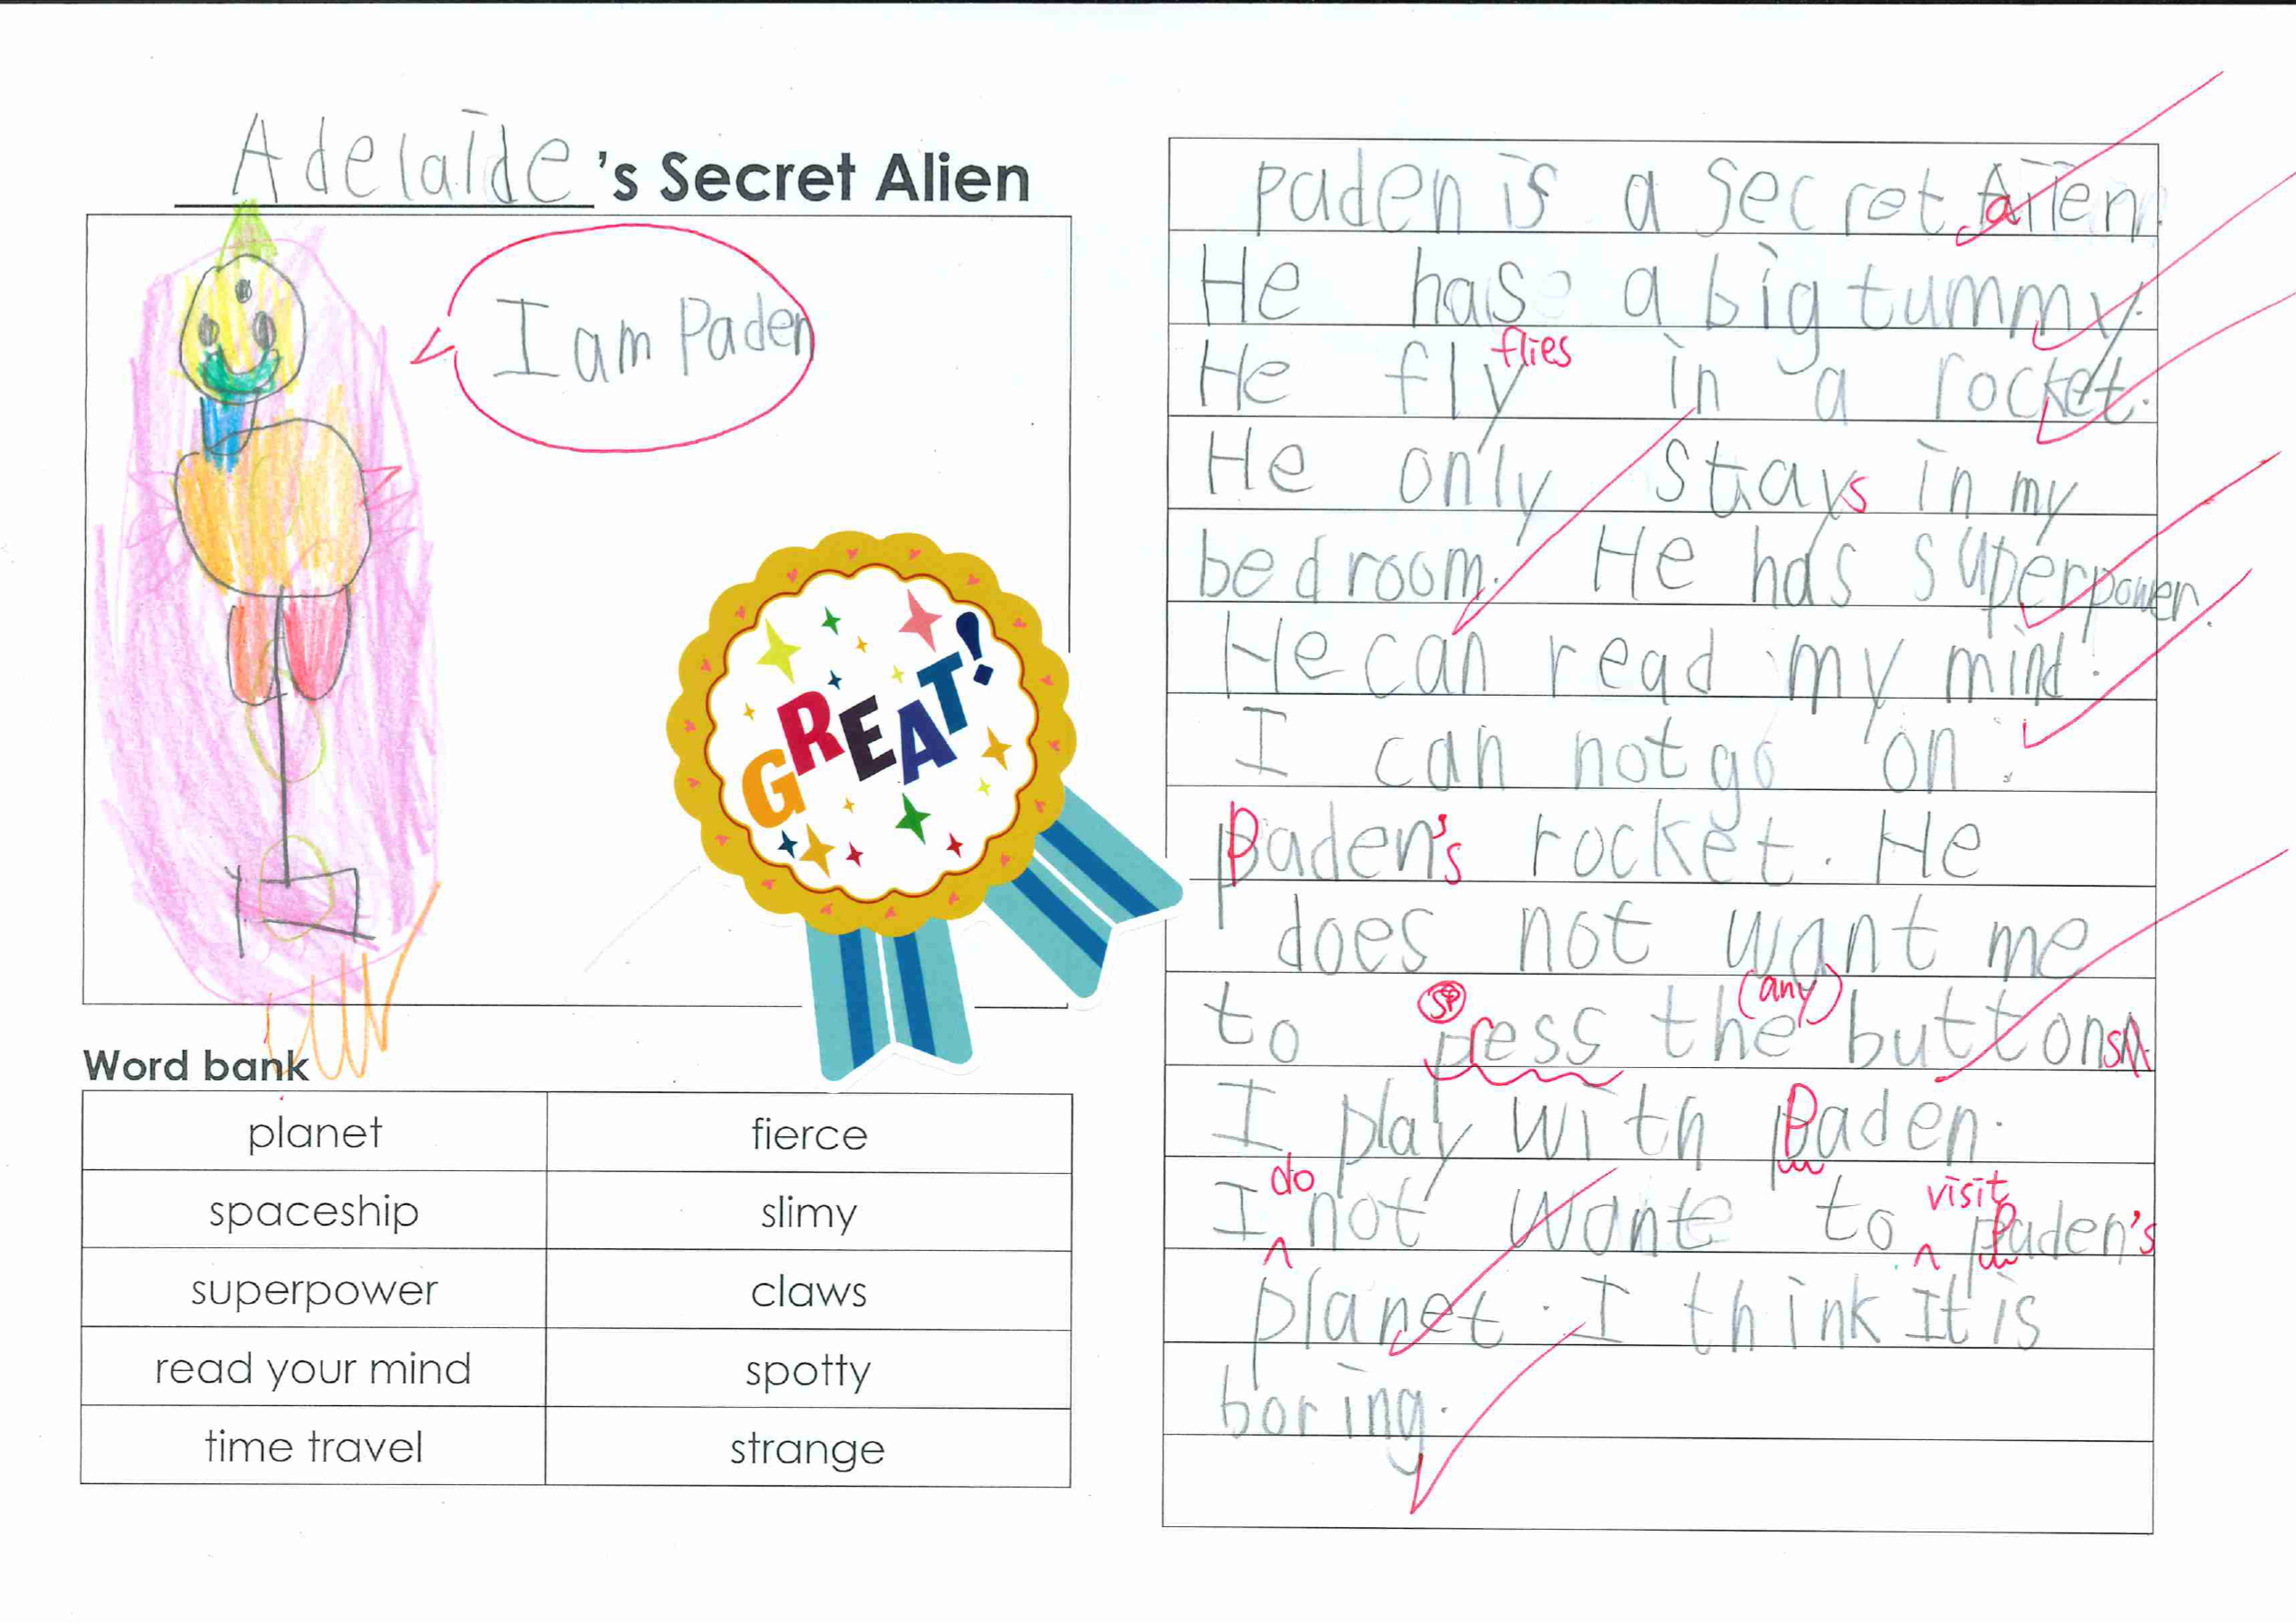 Adelaide’s Secret Alien